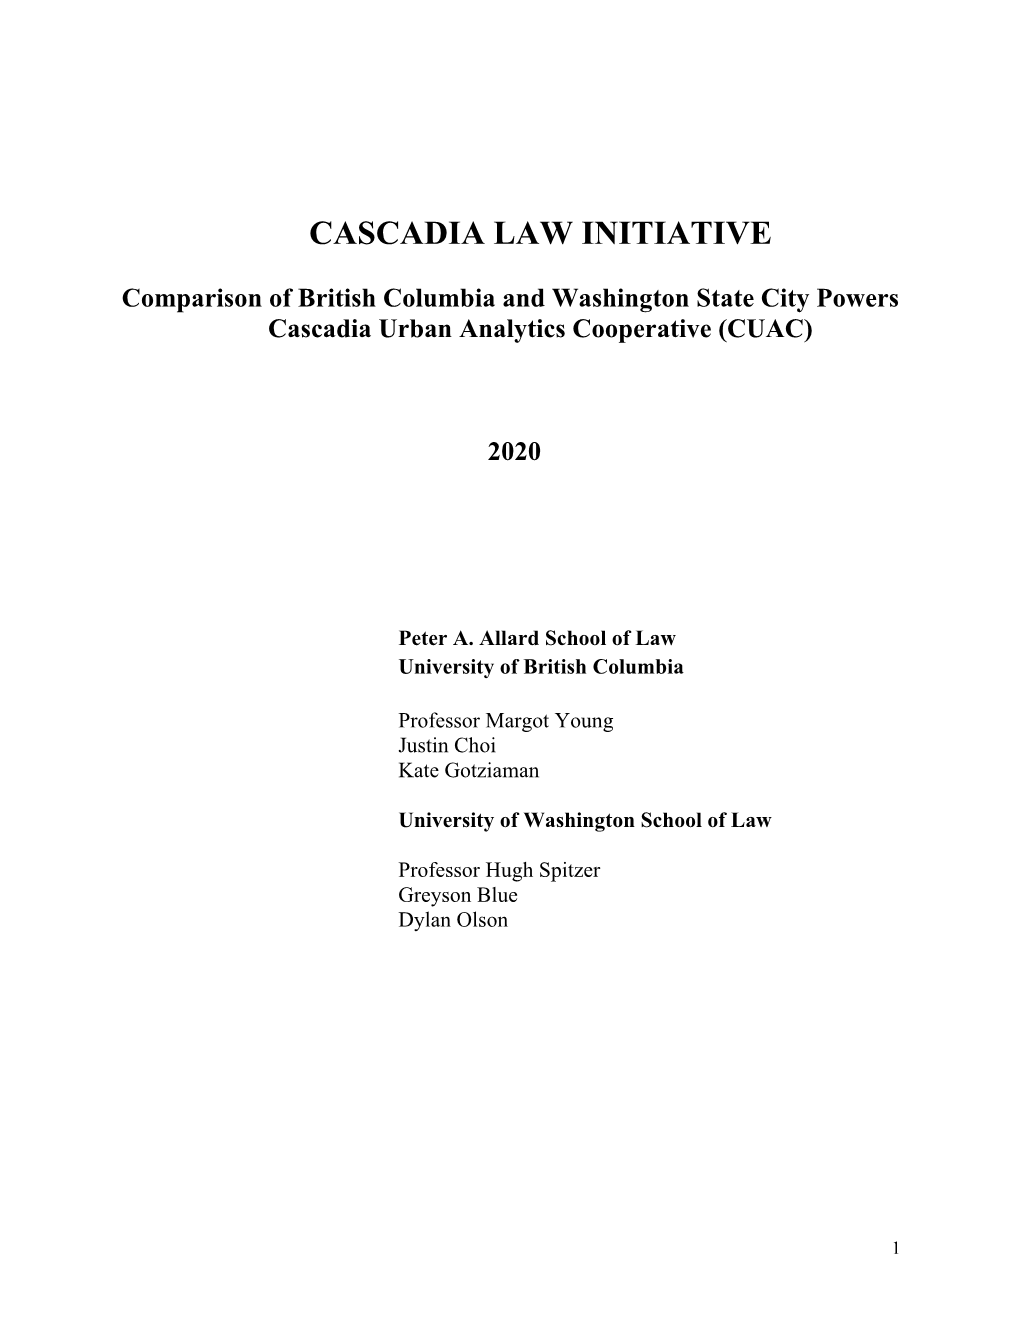 Cascadia Law Initiative